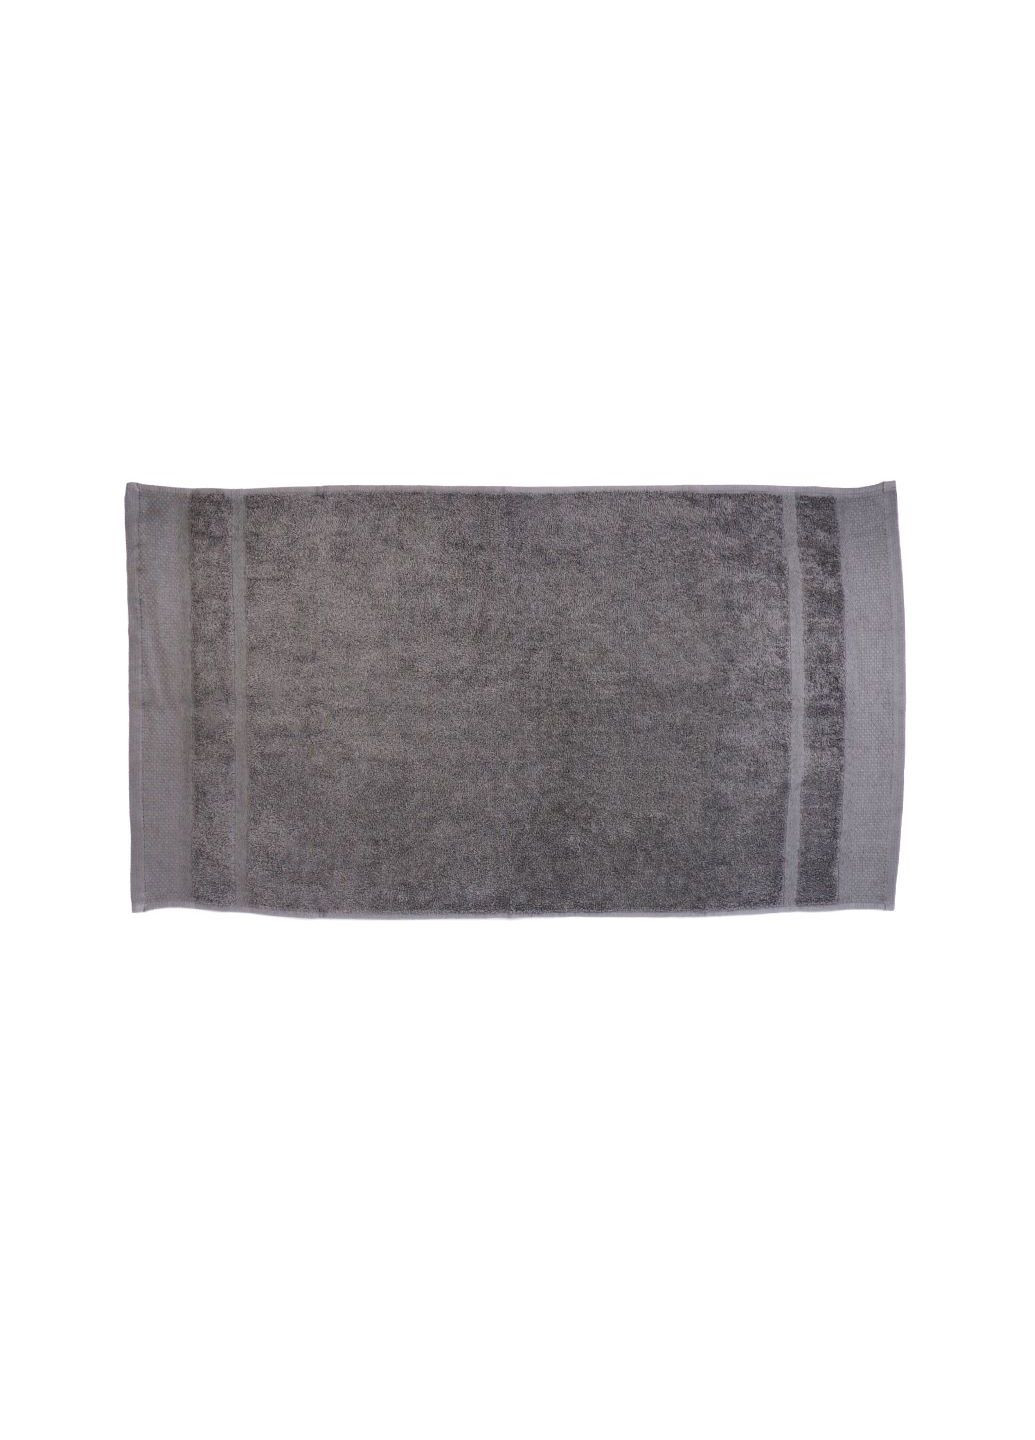 Home Ideas полотенце махровое для рук 50х90 см серое серый производство - Германия